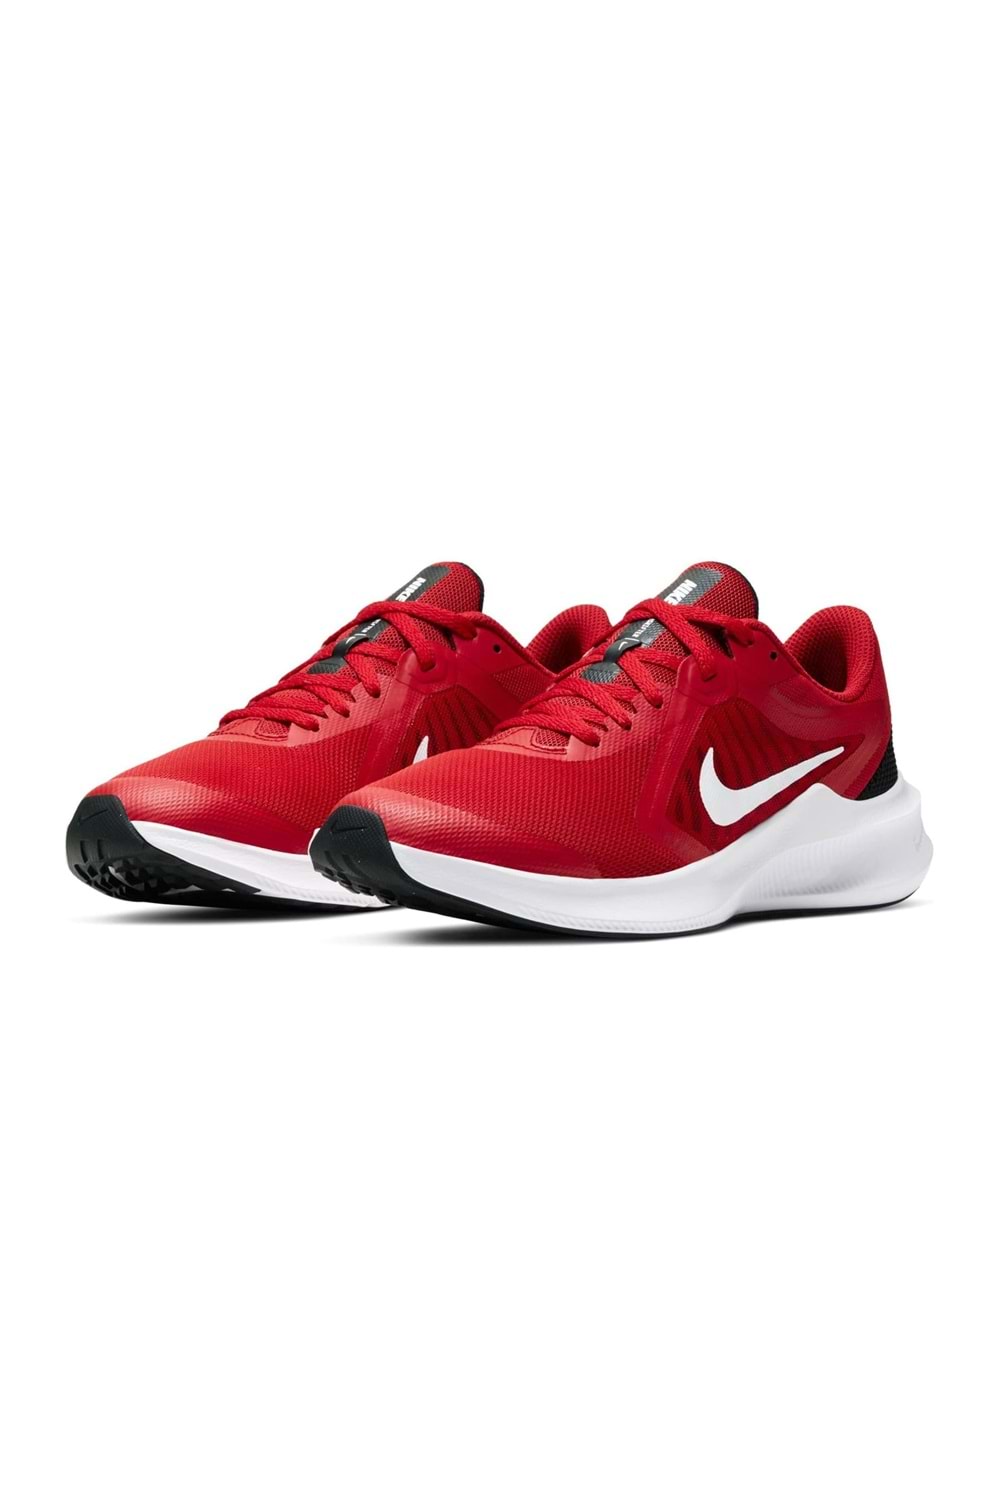 Nike Downshifter 10 Genç Koşu&Yürüyüş Ayakkabısı CJ2066-600